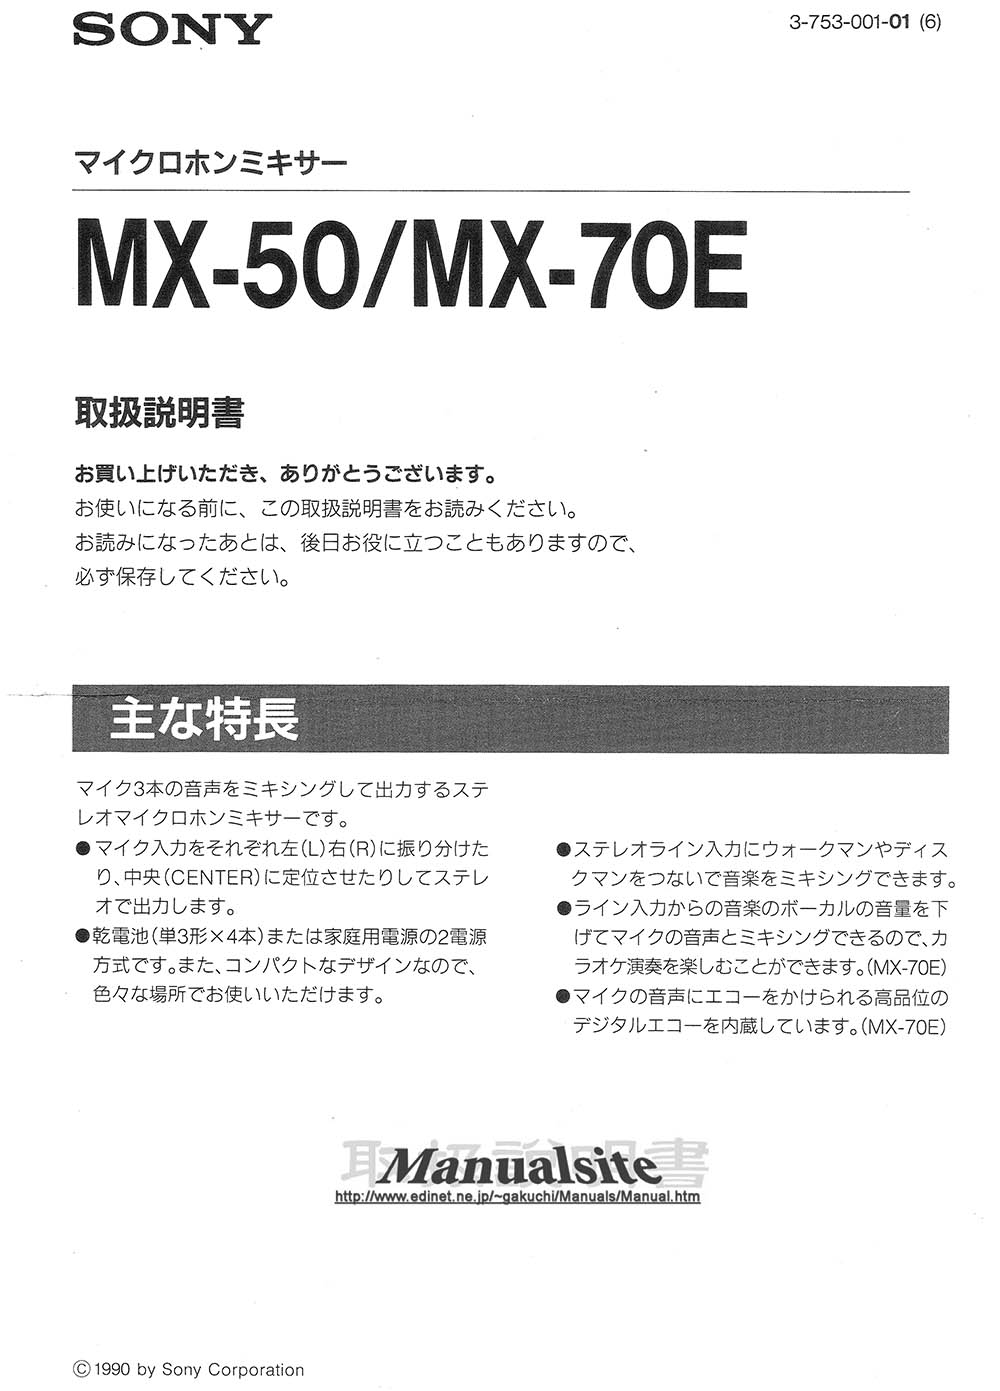 マニュアルサイト詳細館1号館: MX-50/70E